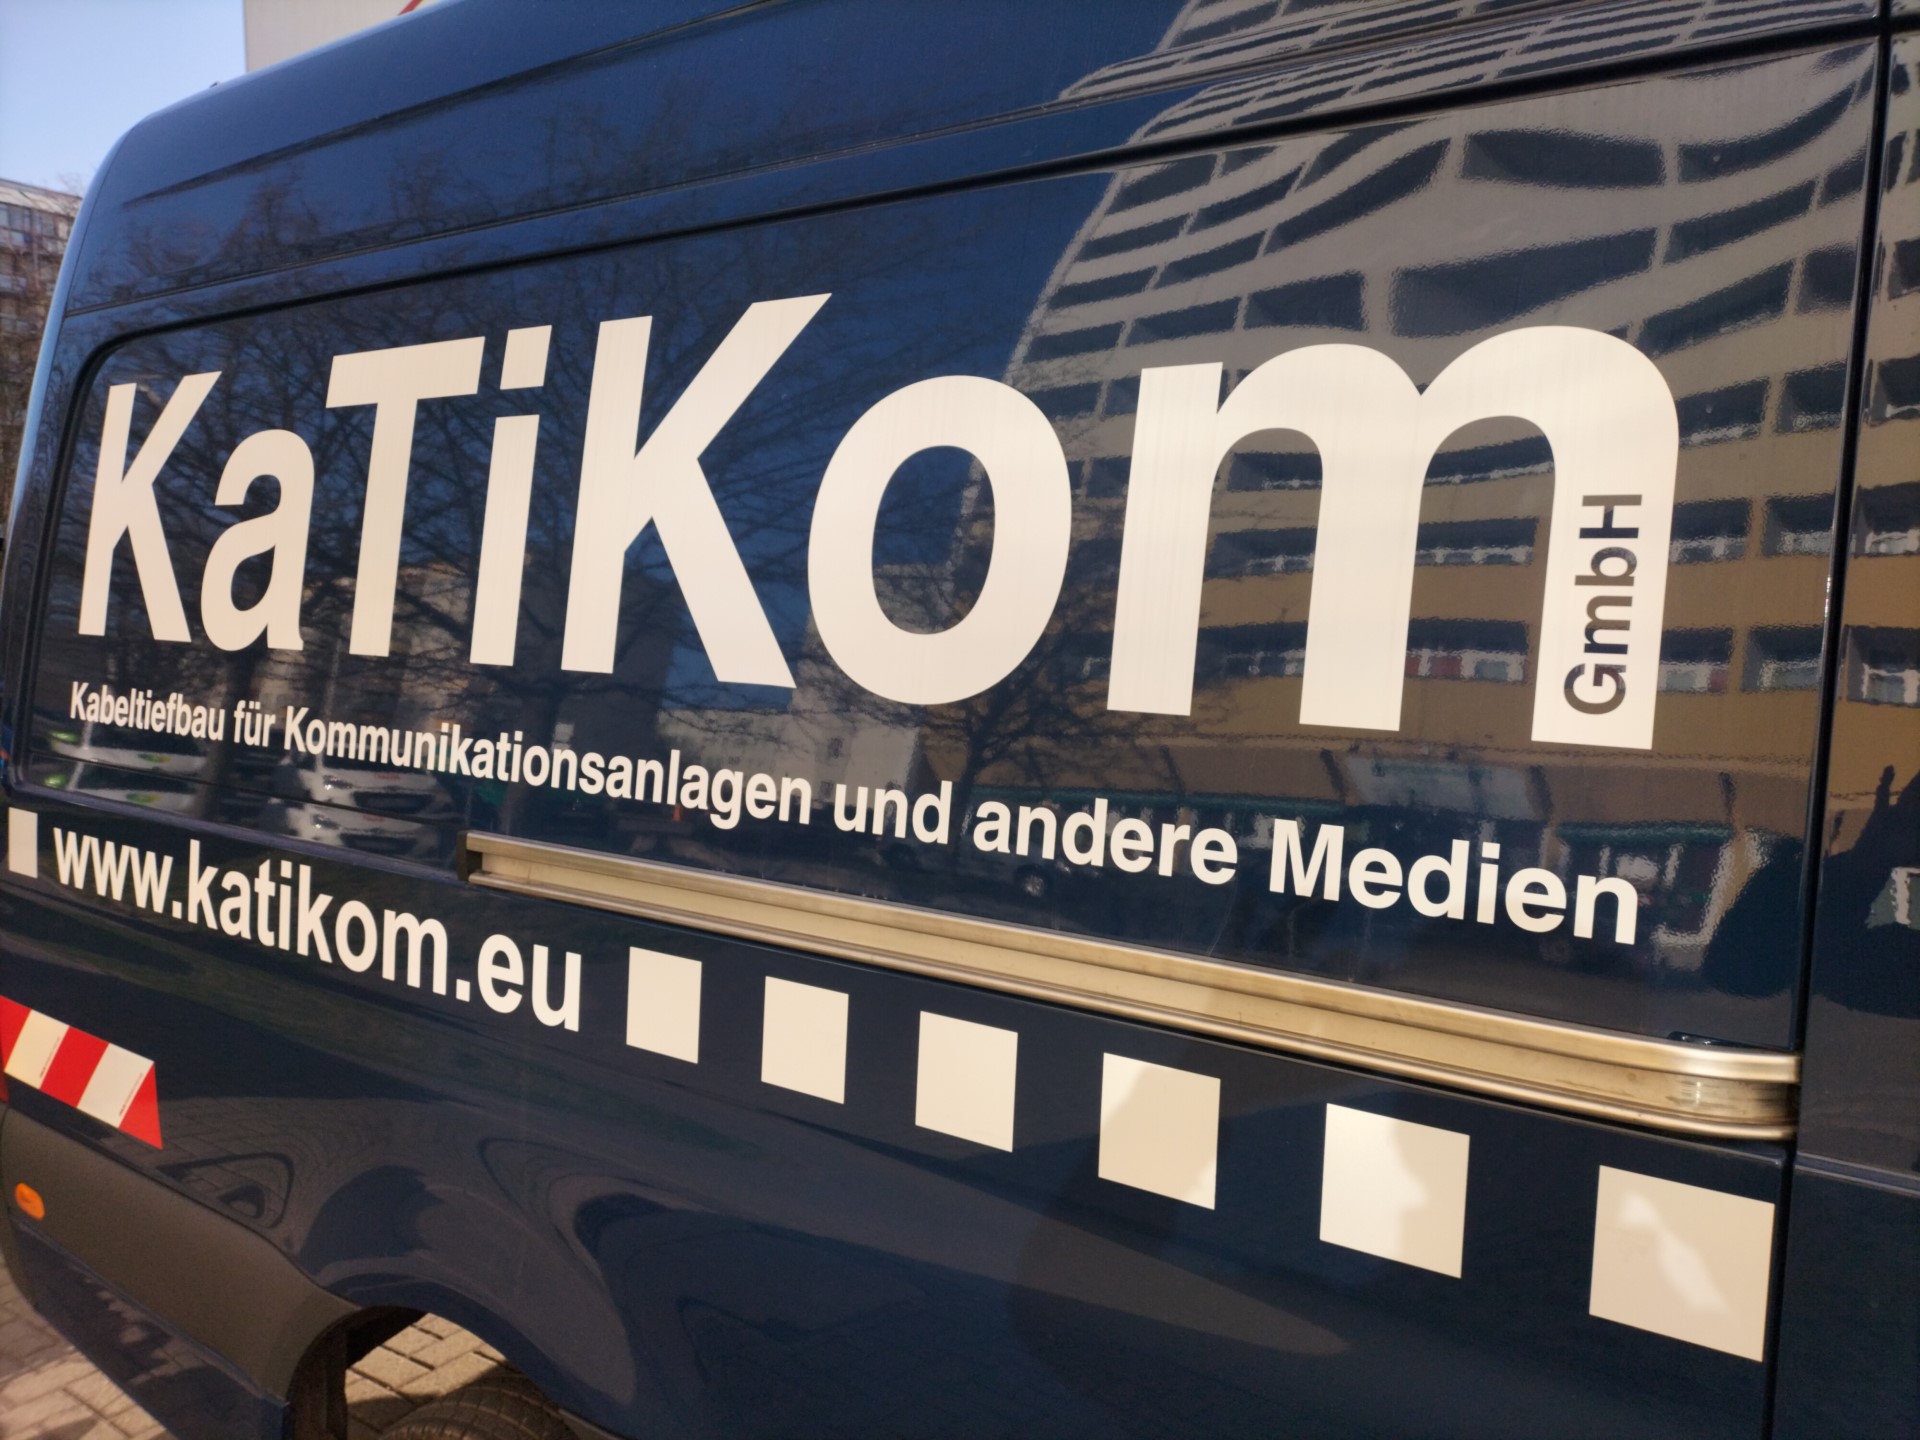 KaTiKom-Logo auf Transporter